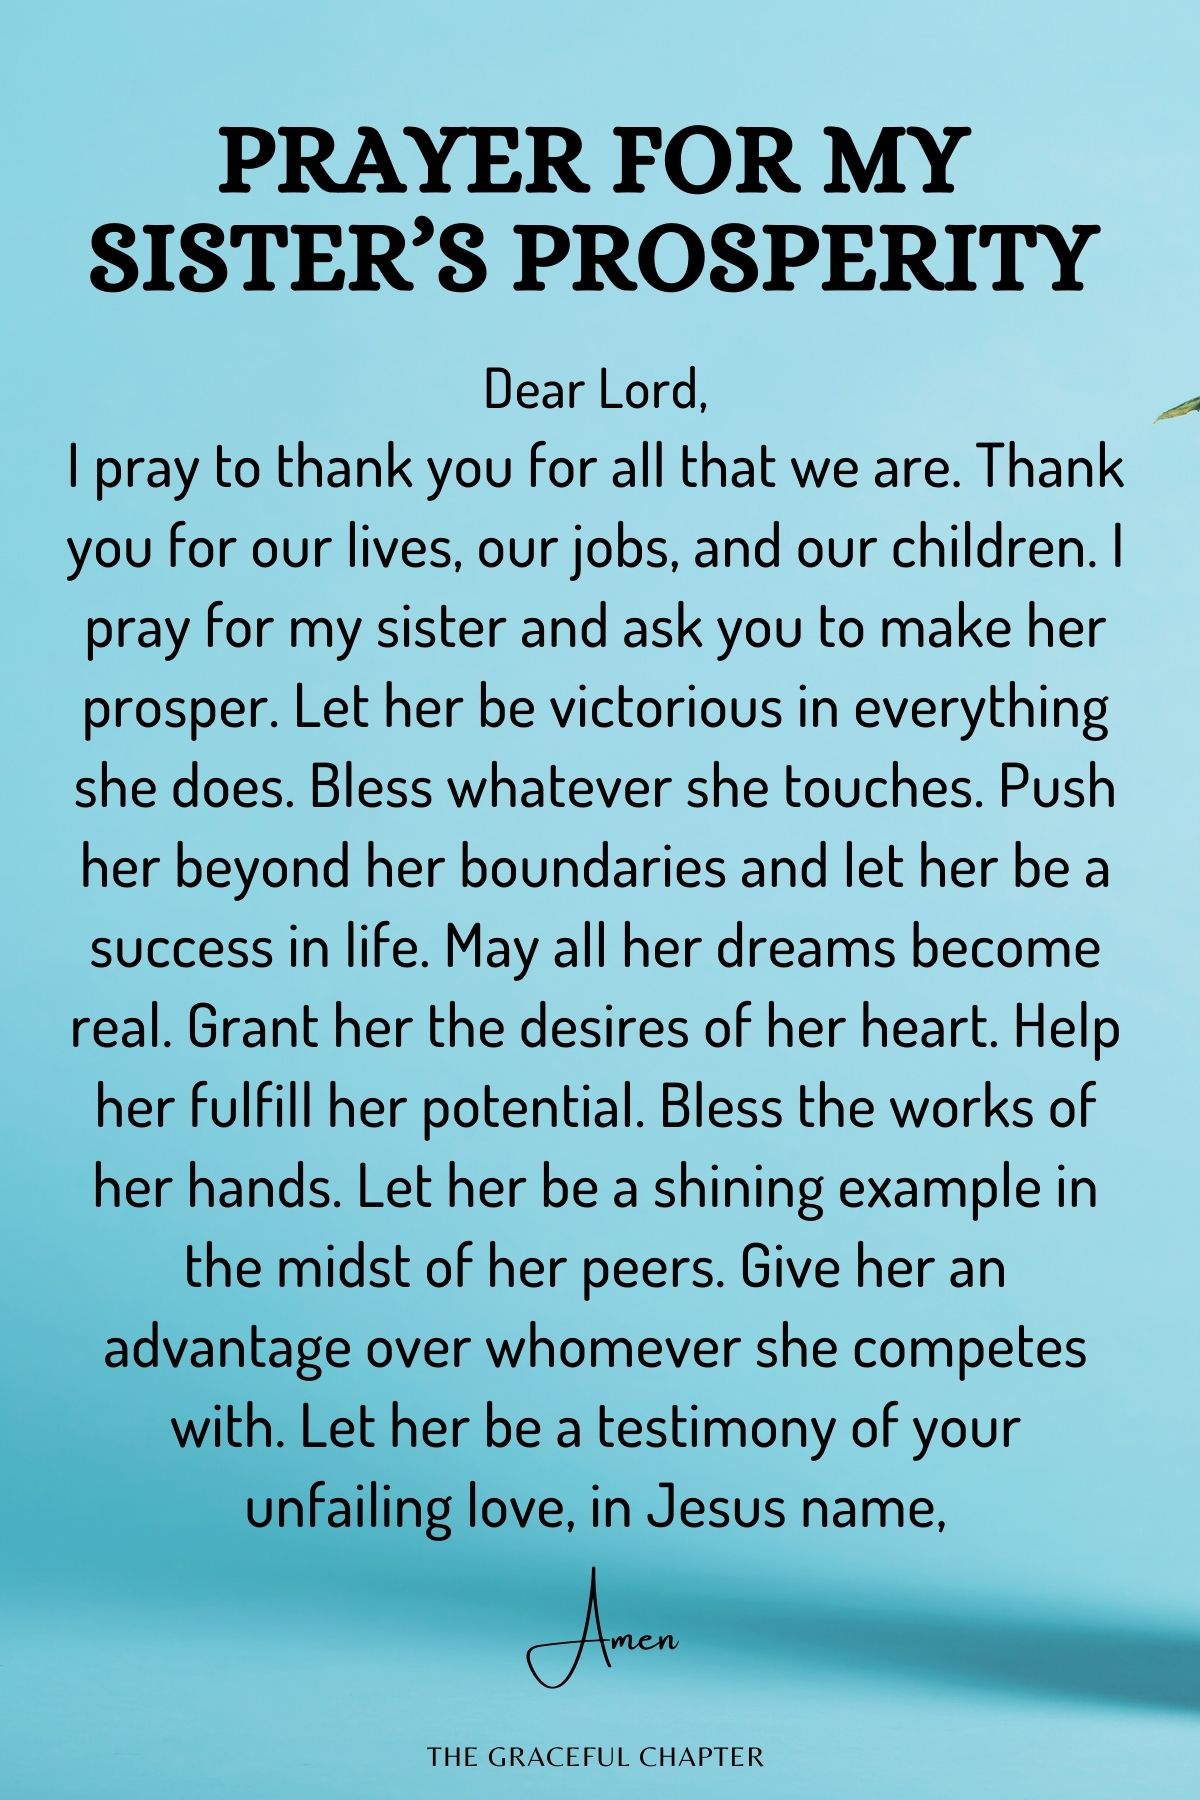 Prayer for my sister’s prosperity - prayers for my sister